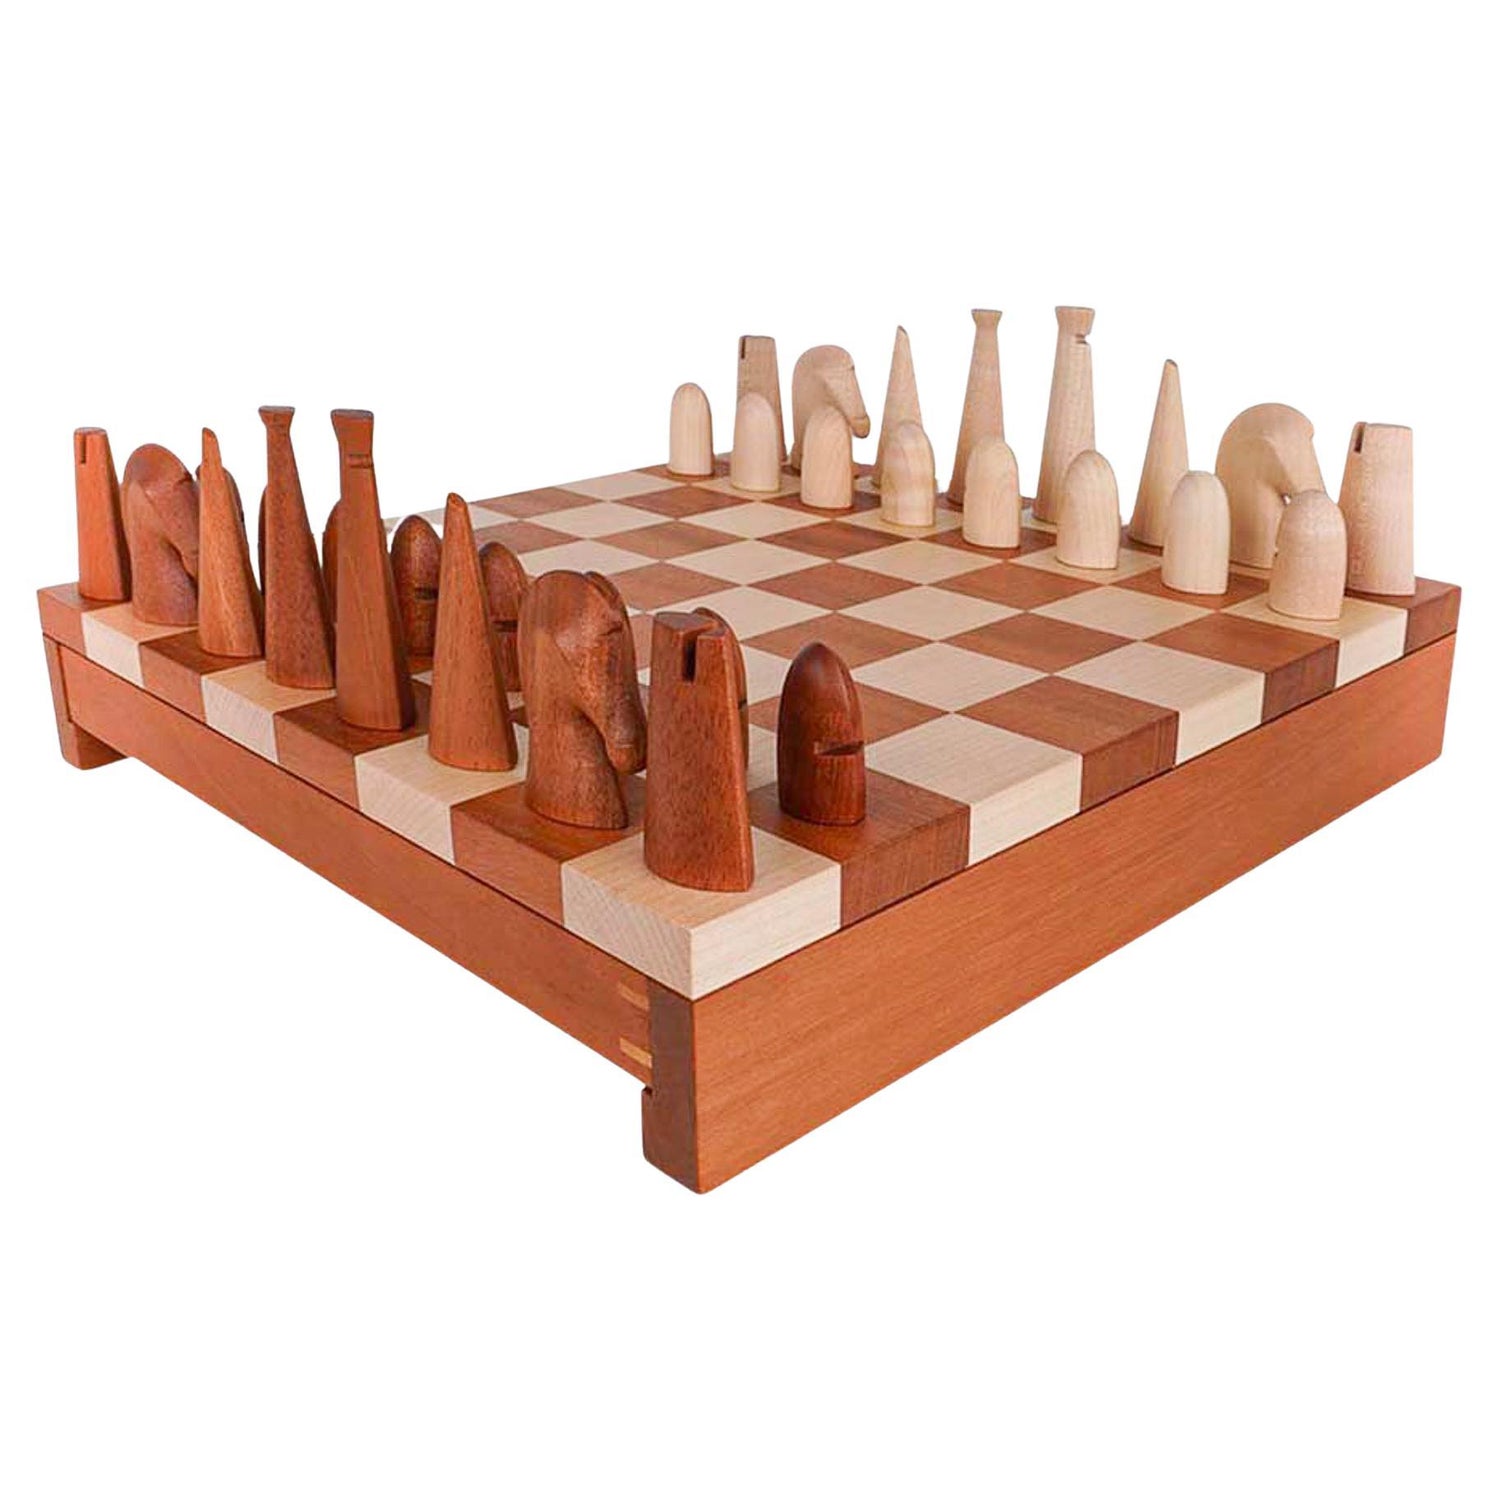 Hermes Mini Samarcande Chess Set Let's Play!